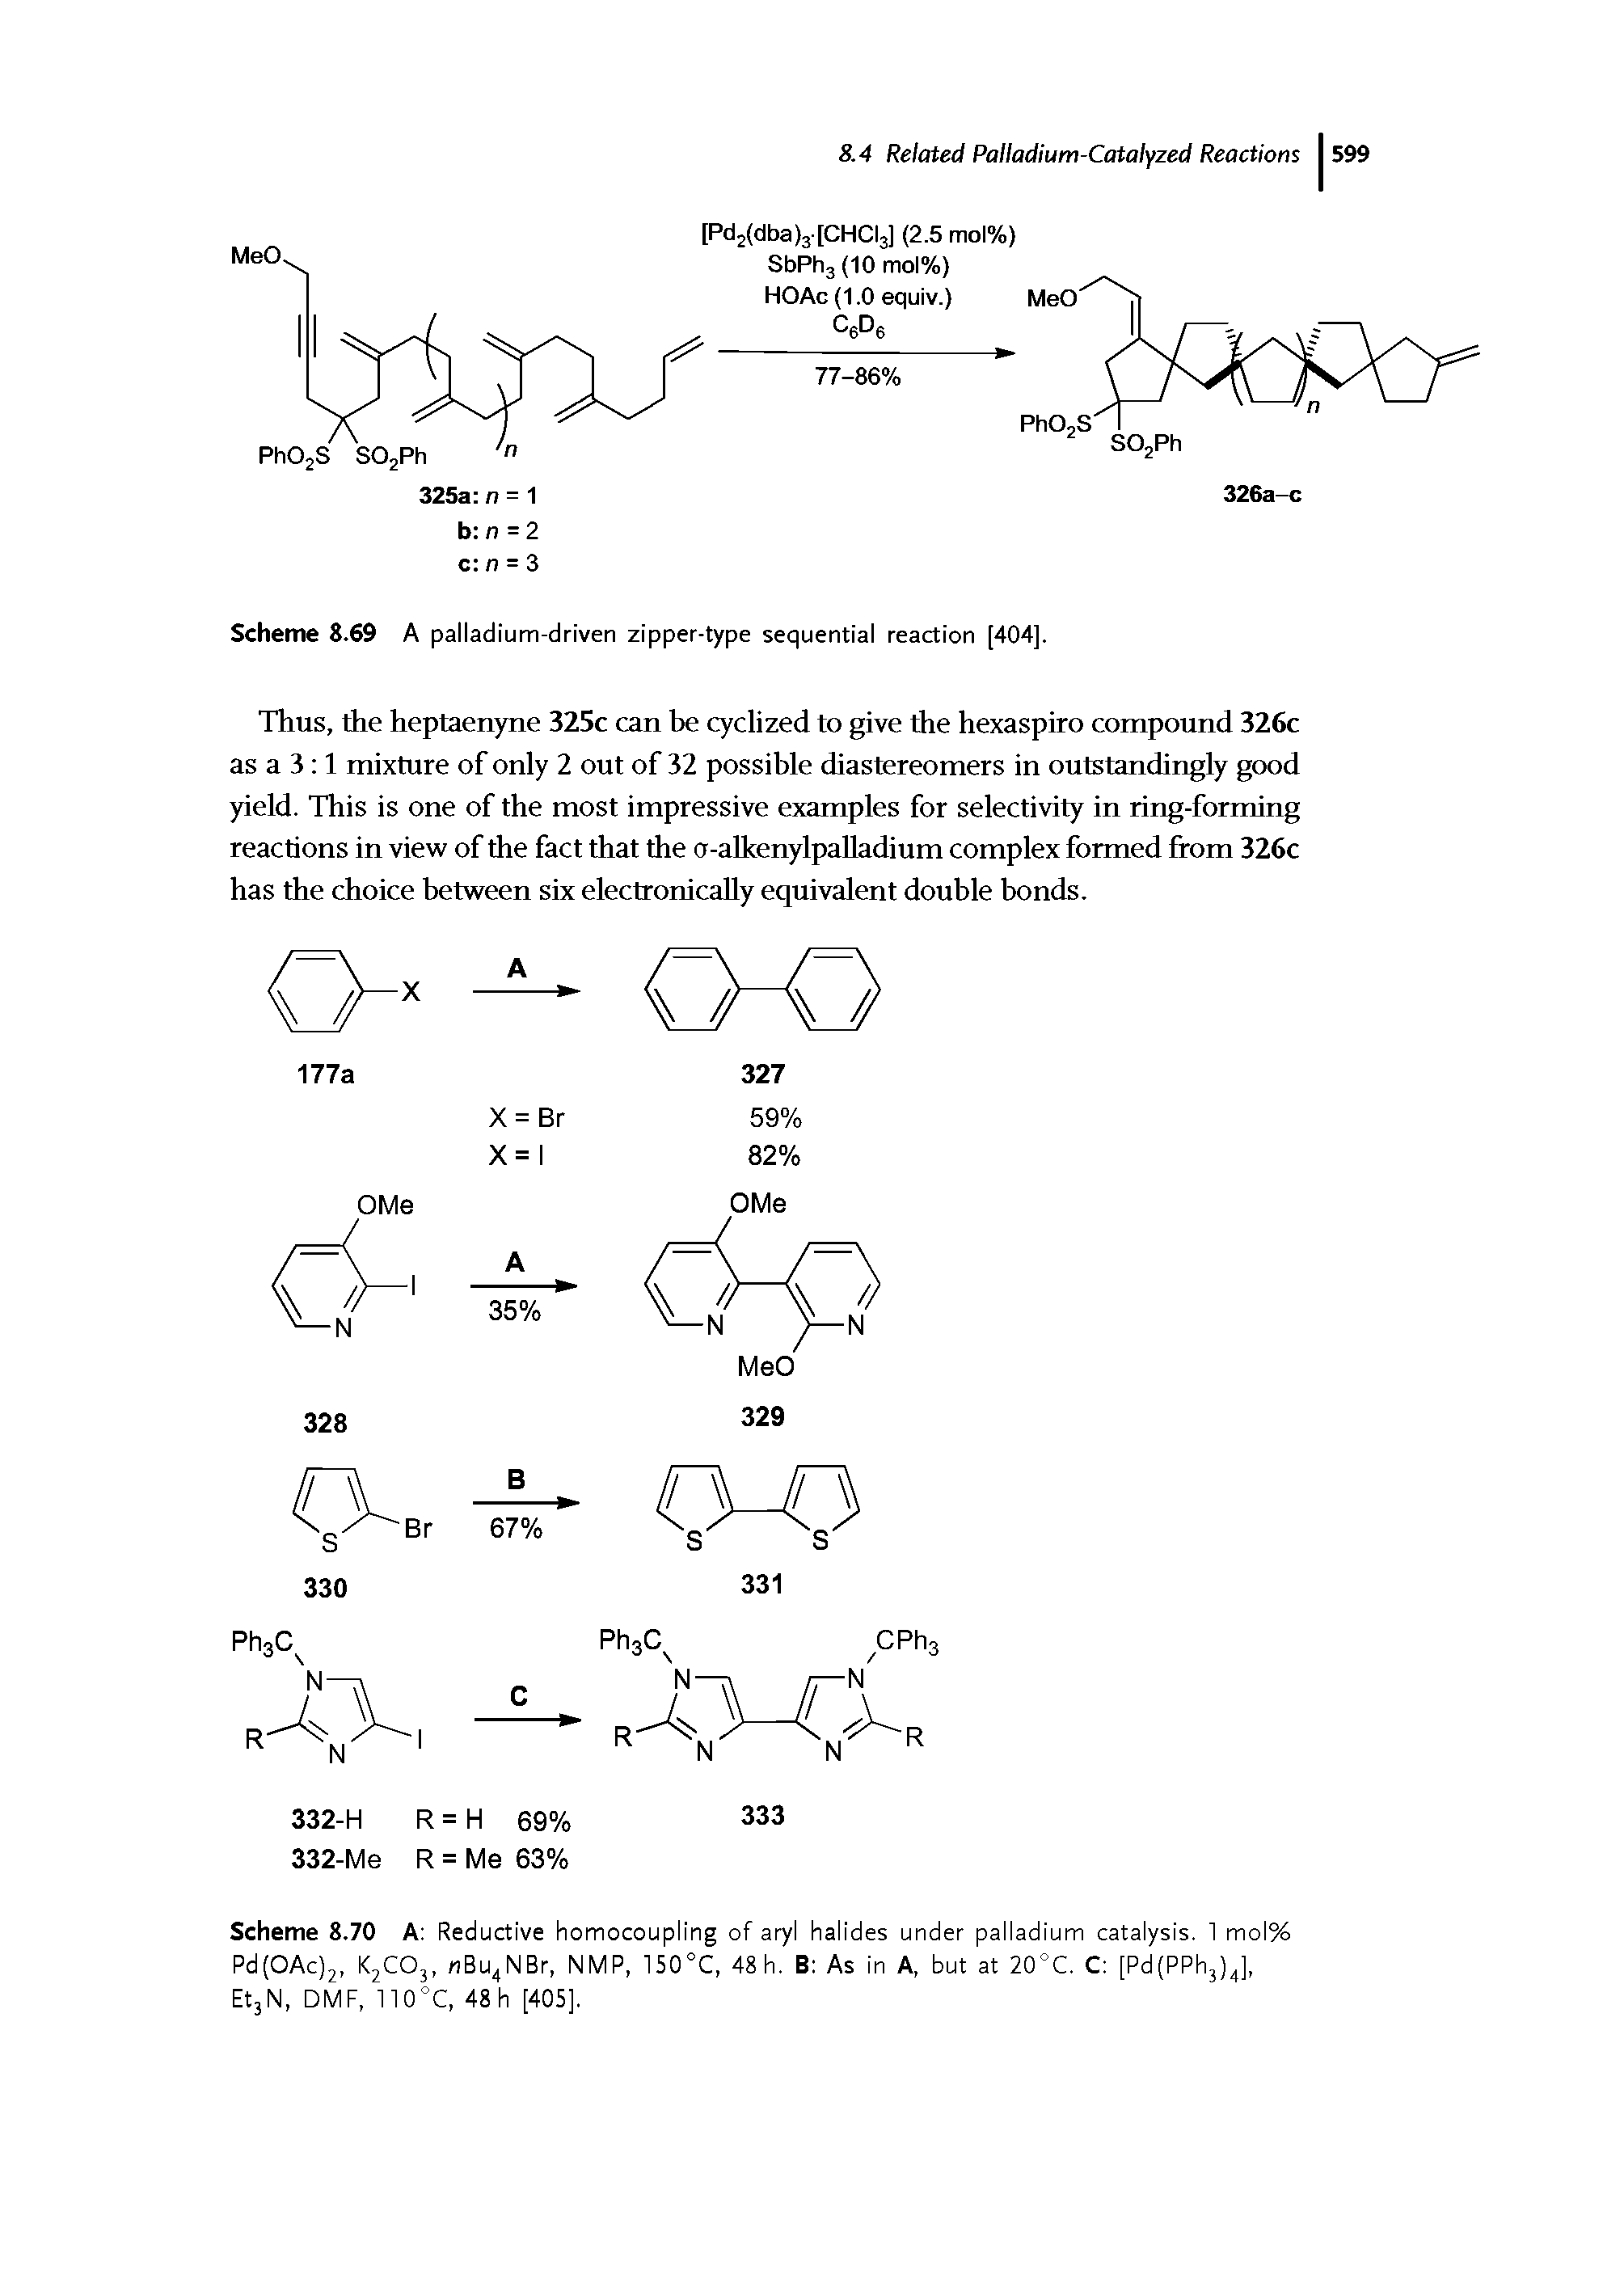 Scheme 8.69 A palladium-driven zipper-type sequential reaction [404].